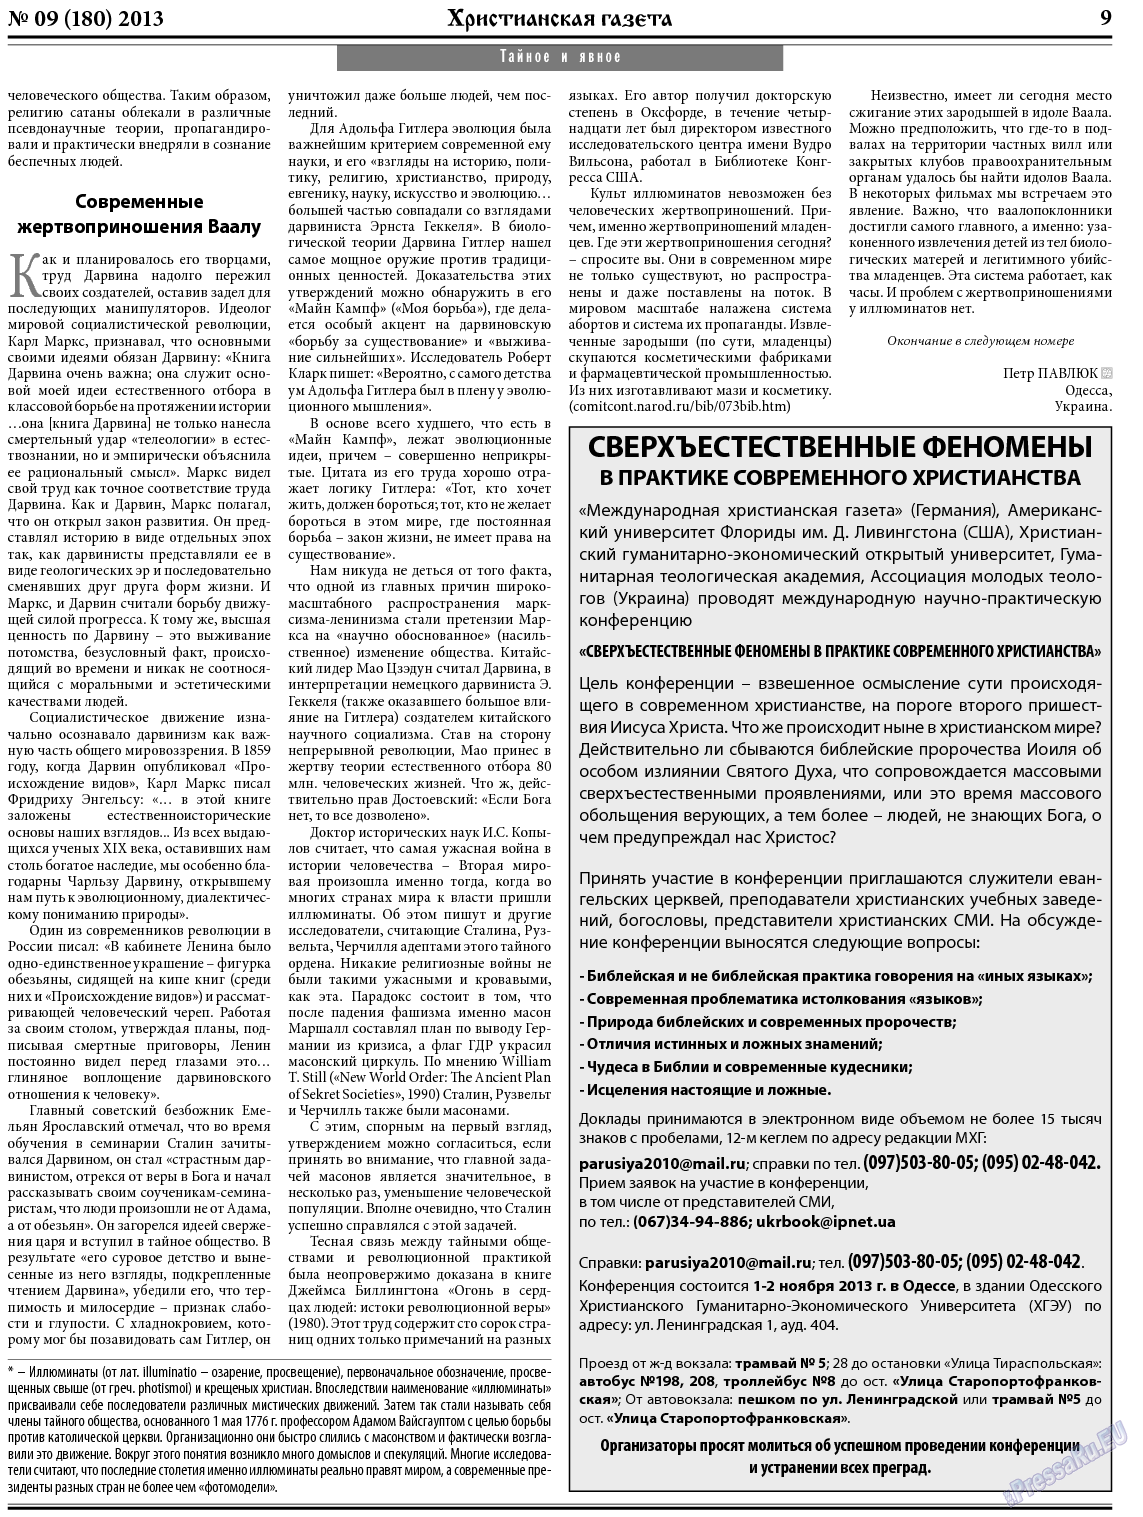 Христианская газета, газета. 2013 №9 стр.9